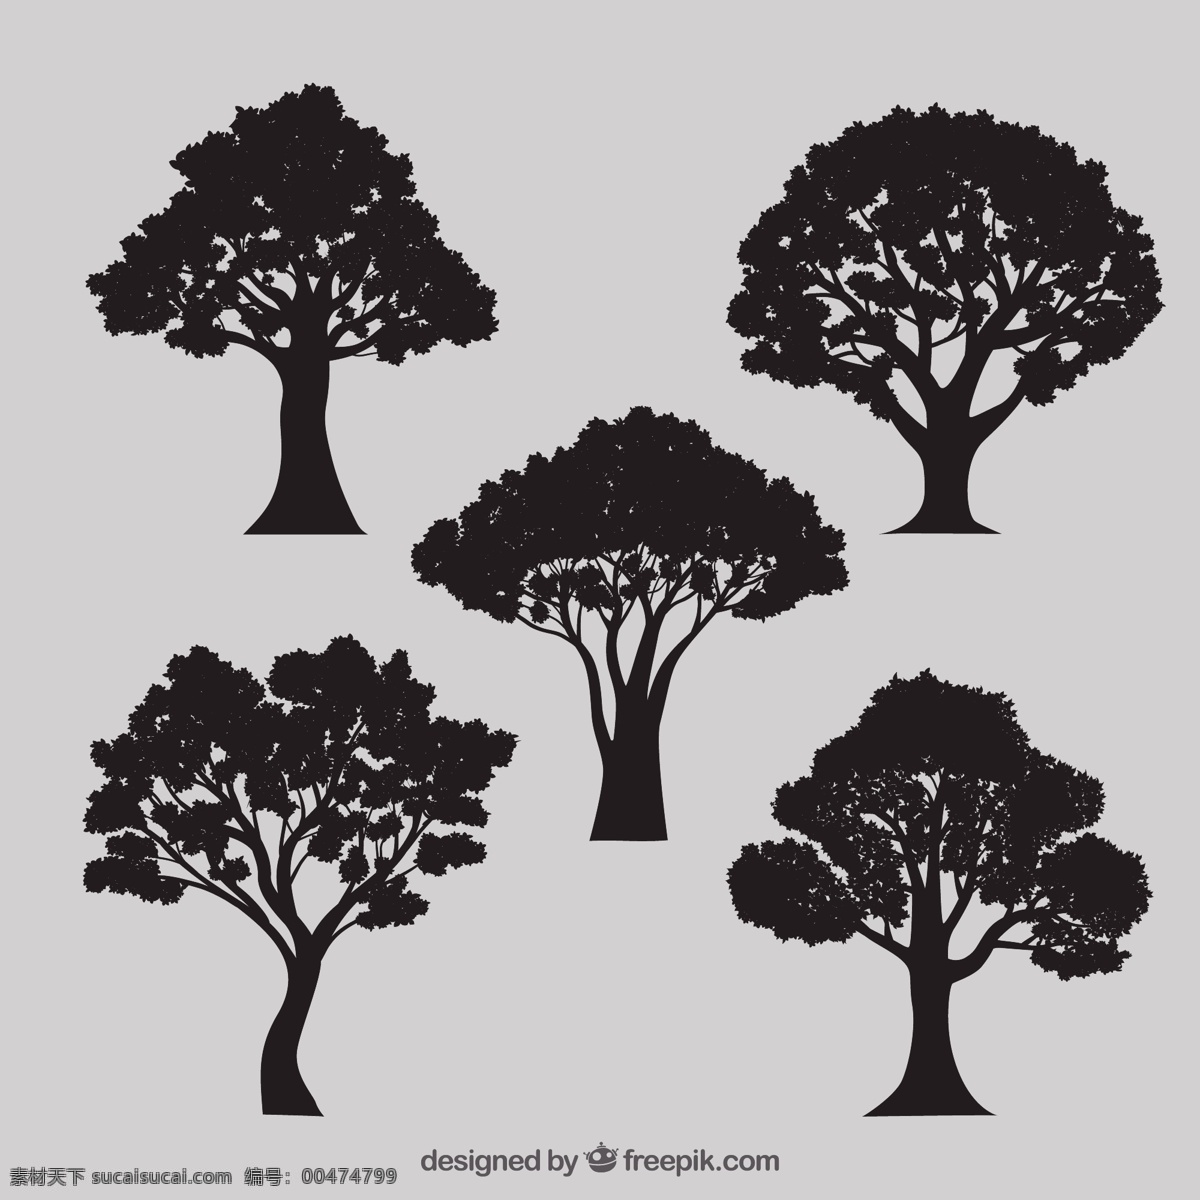 多种 树 剪影 自然 森林 植物 品种繁多 植被 图标 高清 源文件